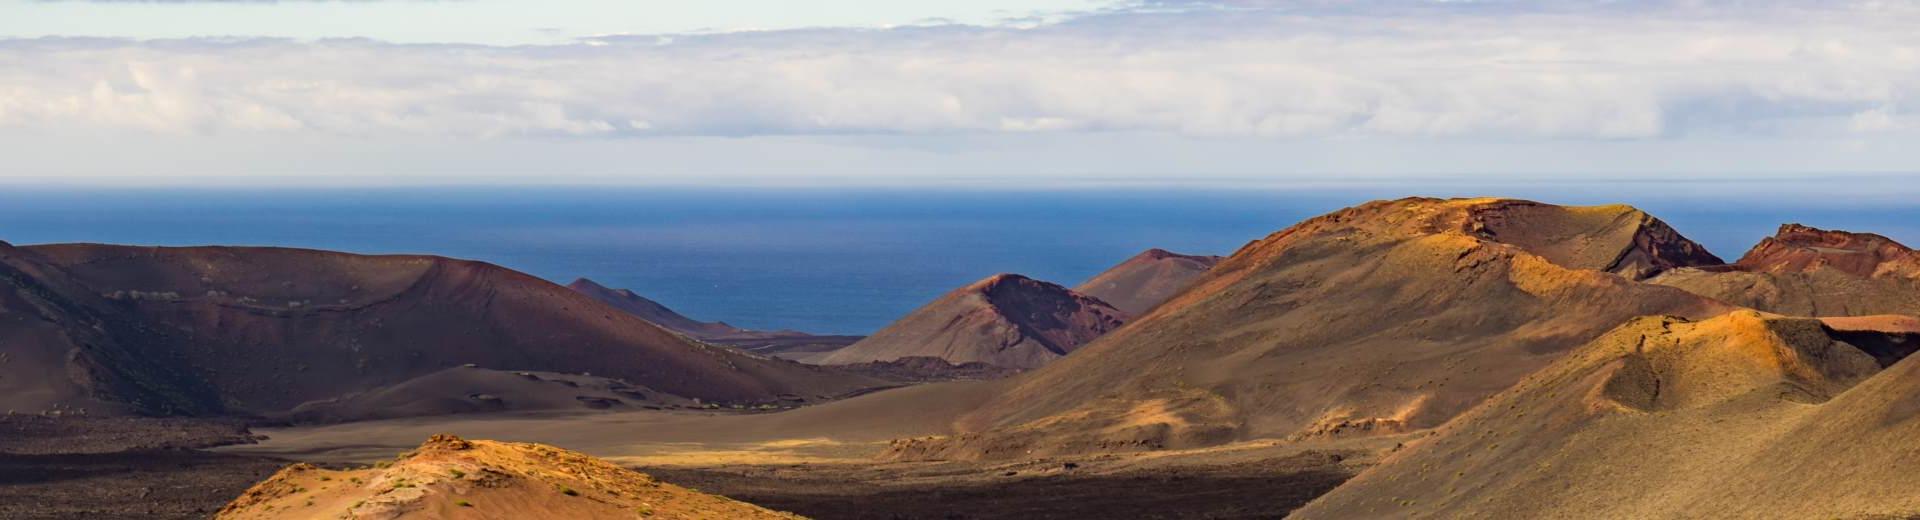 Besök denna vulkaniska ö som kommer överraska dig med sin skönhet - Casamundo